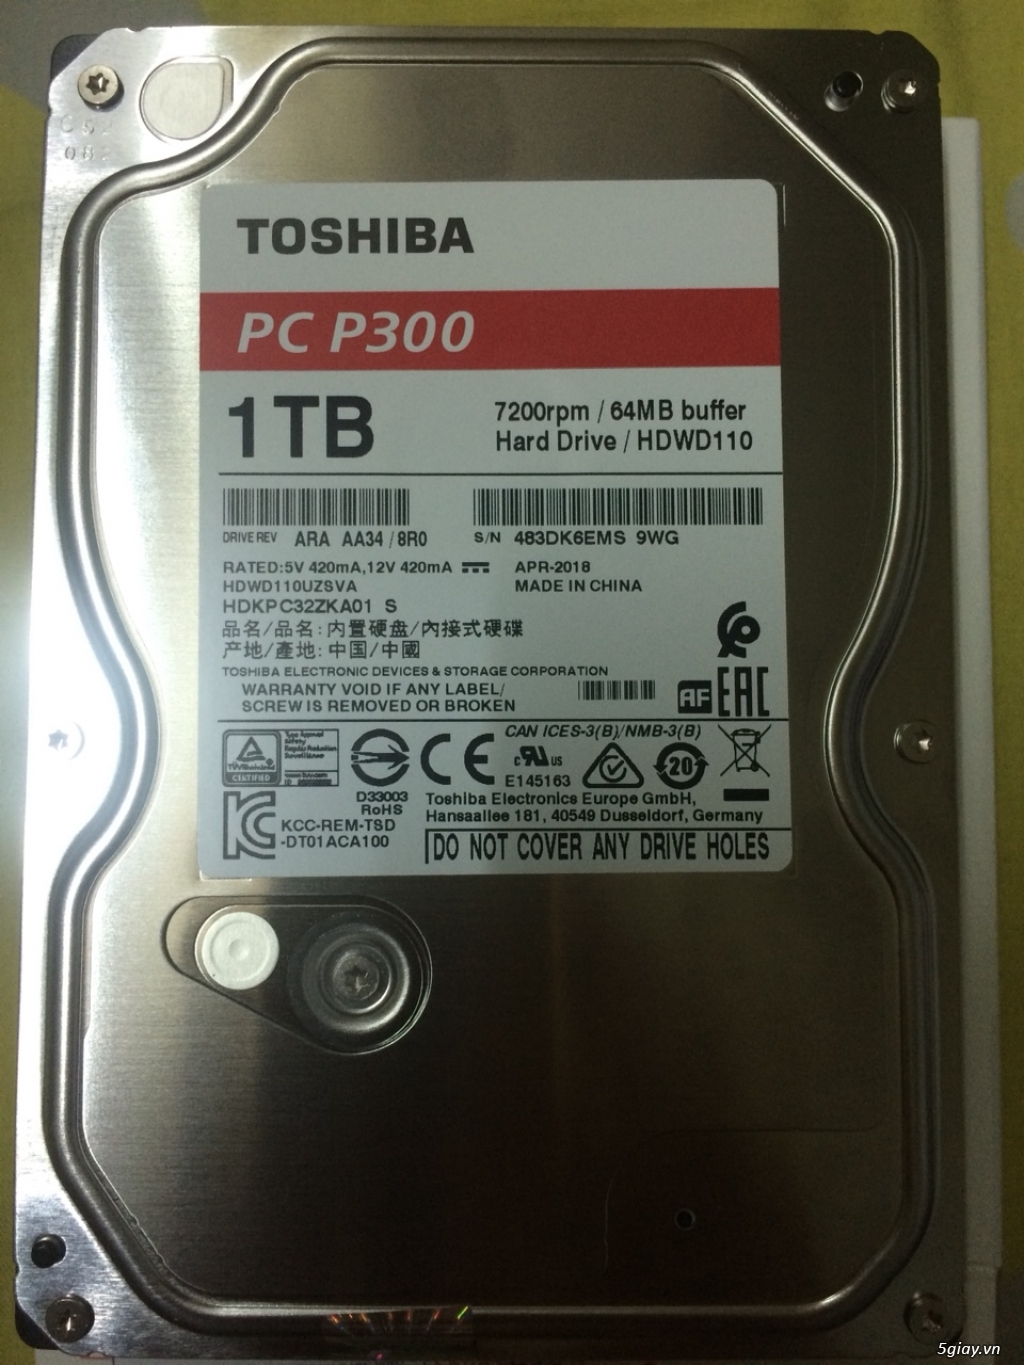 Cần Bán : 1 Hdd New 100% Toshiba P300 1TB 7200rpm - 1